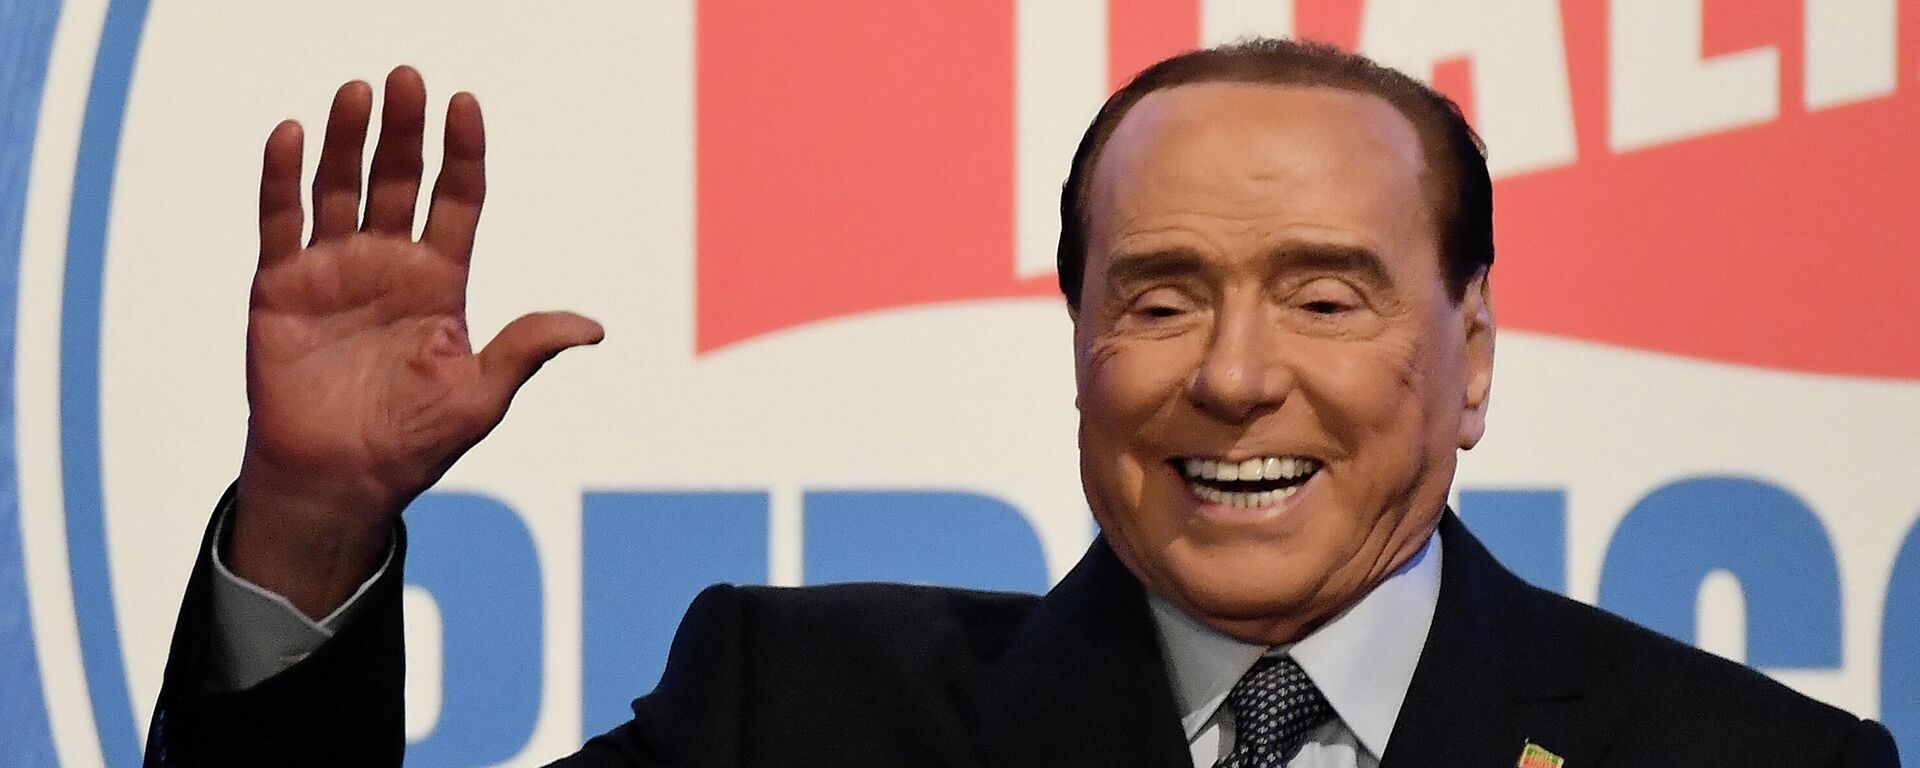 O ex-primeiro-ministro italiano e líder do partido Forza Italia, Silvio Berlusconi, gesticula durante um comício em Roma em 9 de março de 2022 - Sputnik Brasil, 1920, 23.09.2022